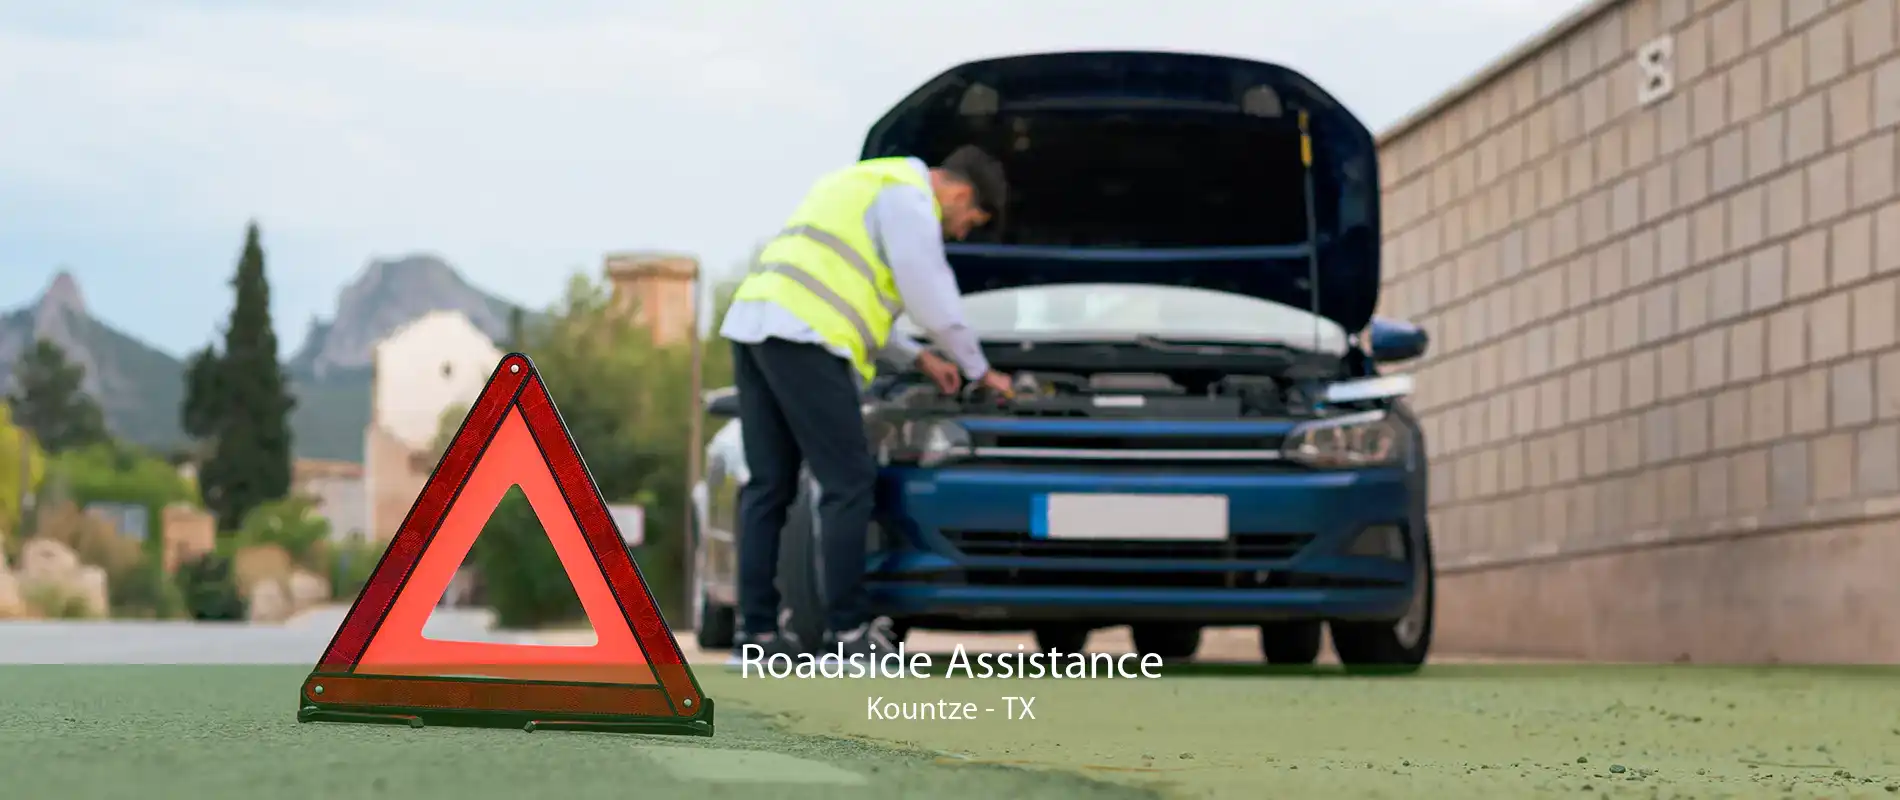 Roadside Assistance Kountze - TX